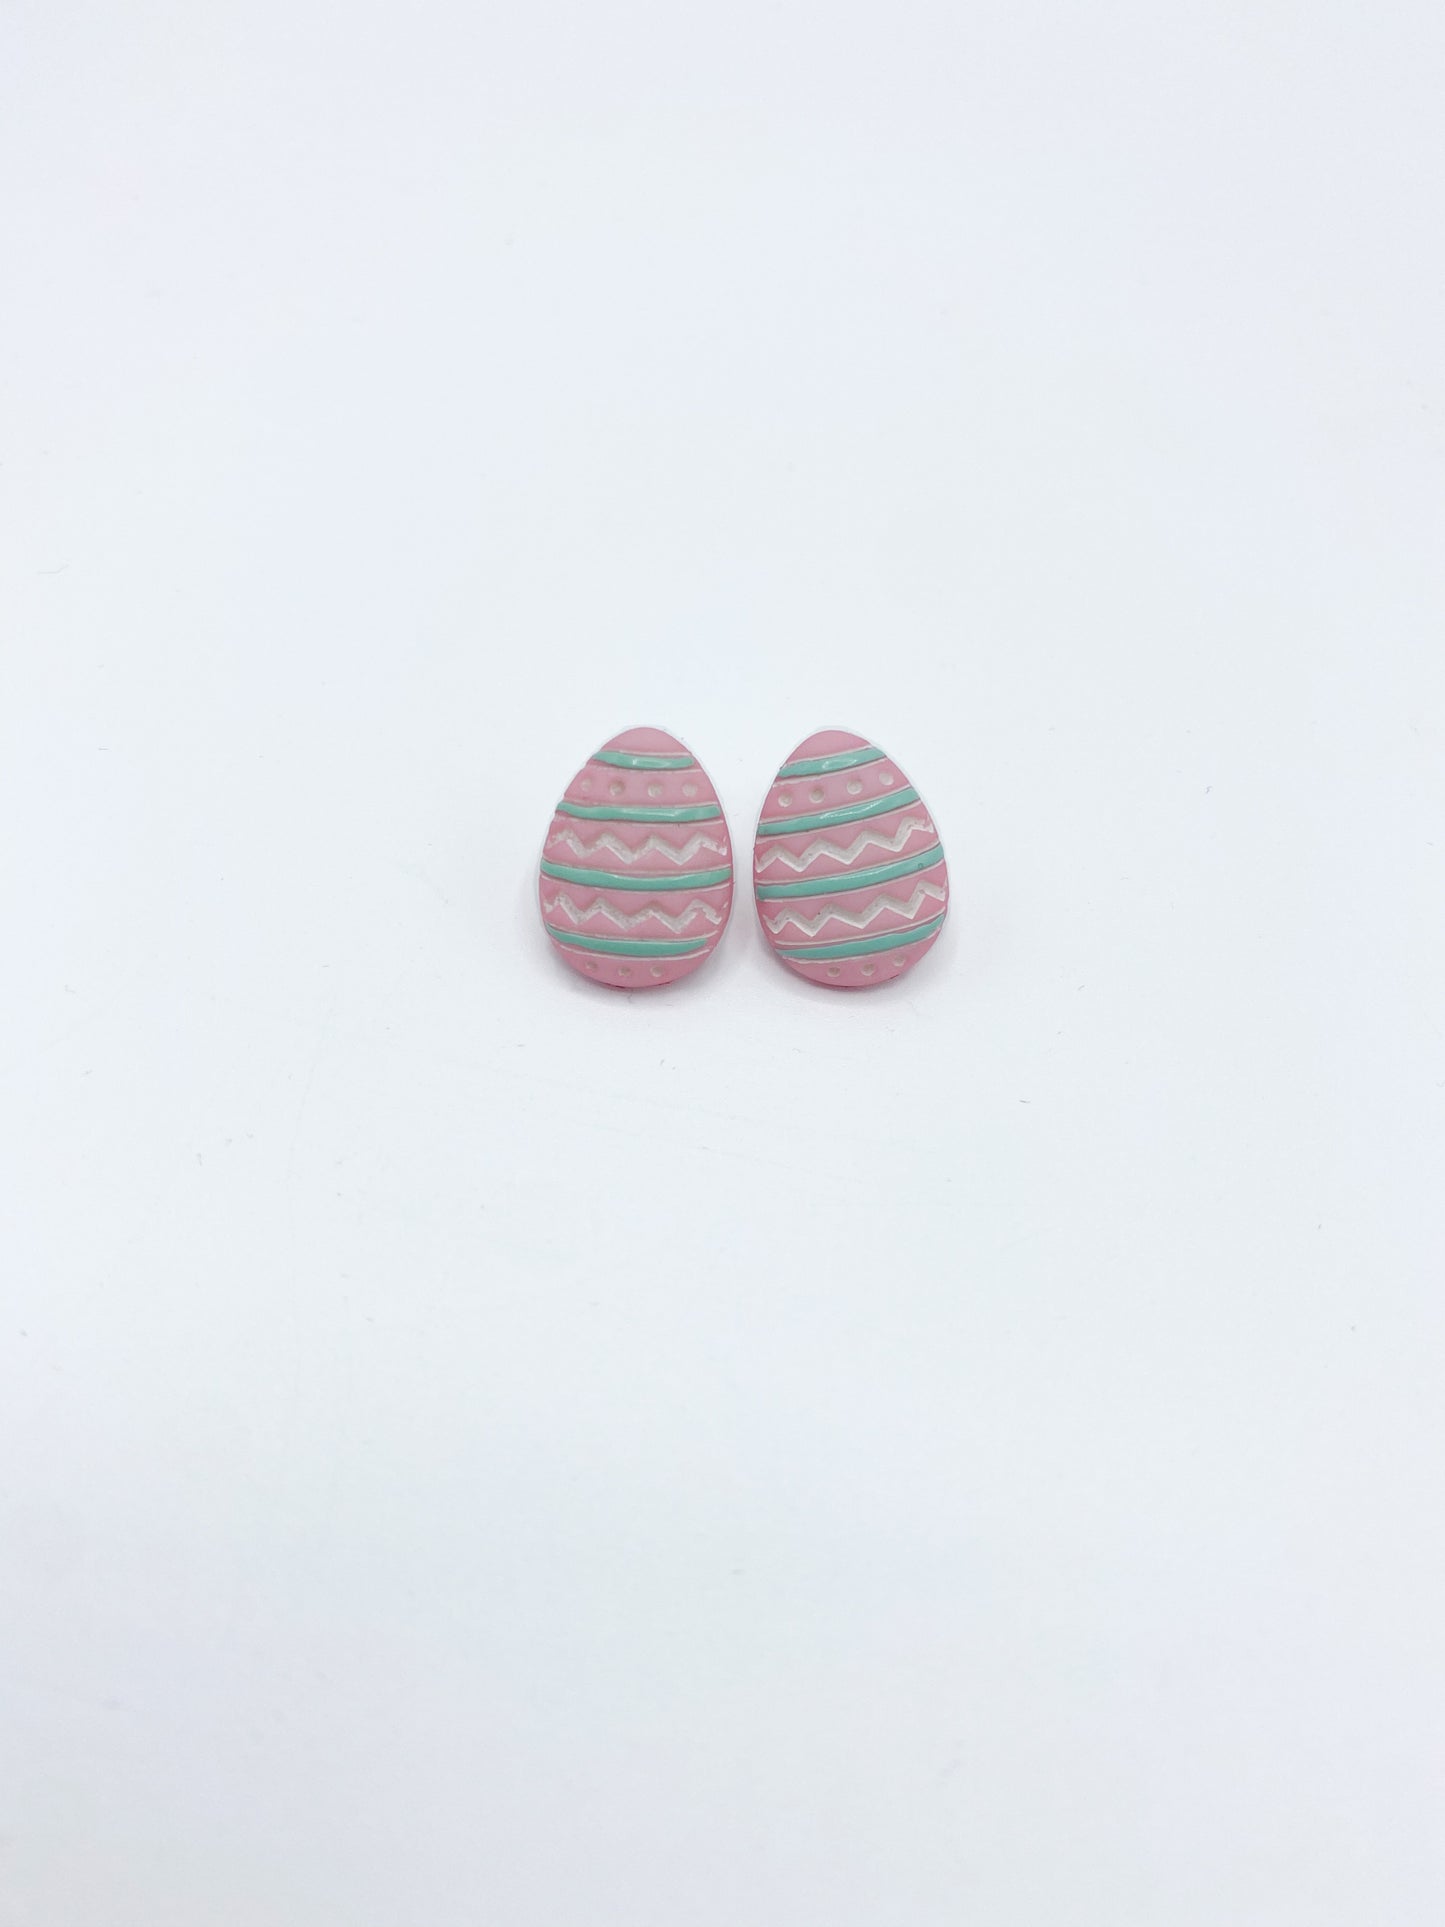 Egg Earrings Easter Egg earrings